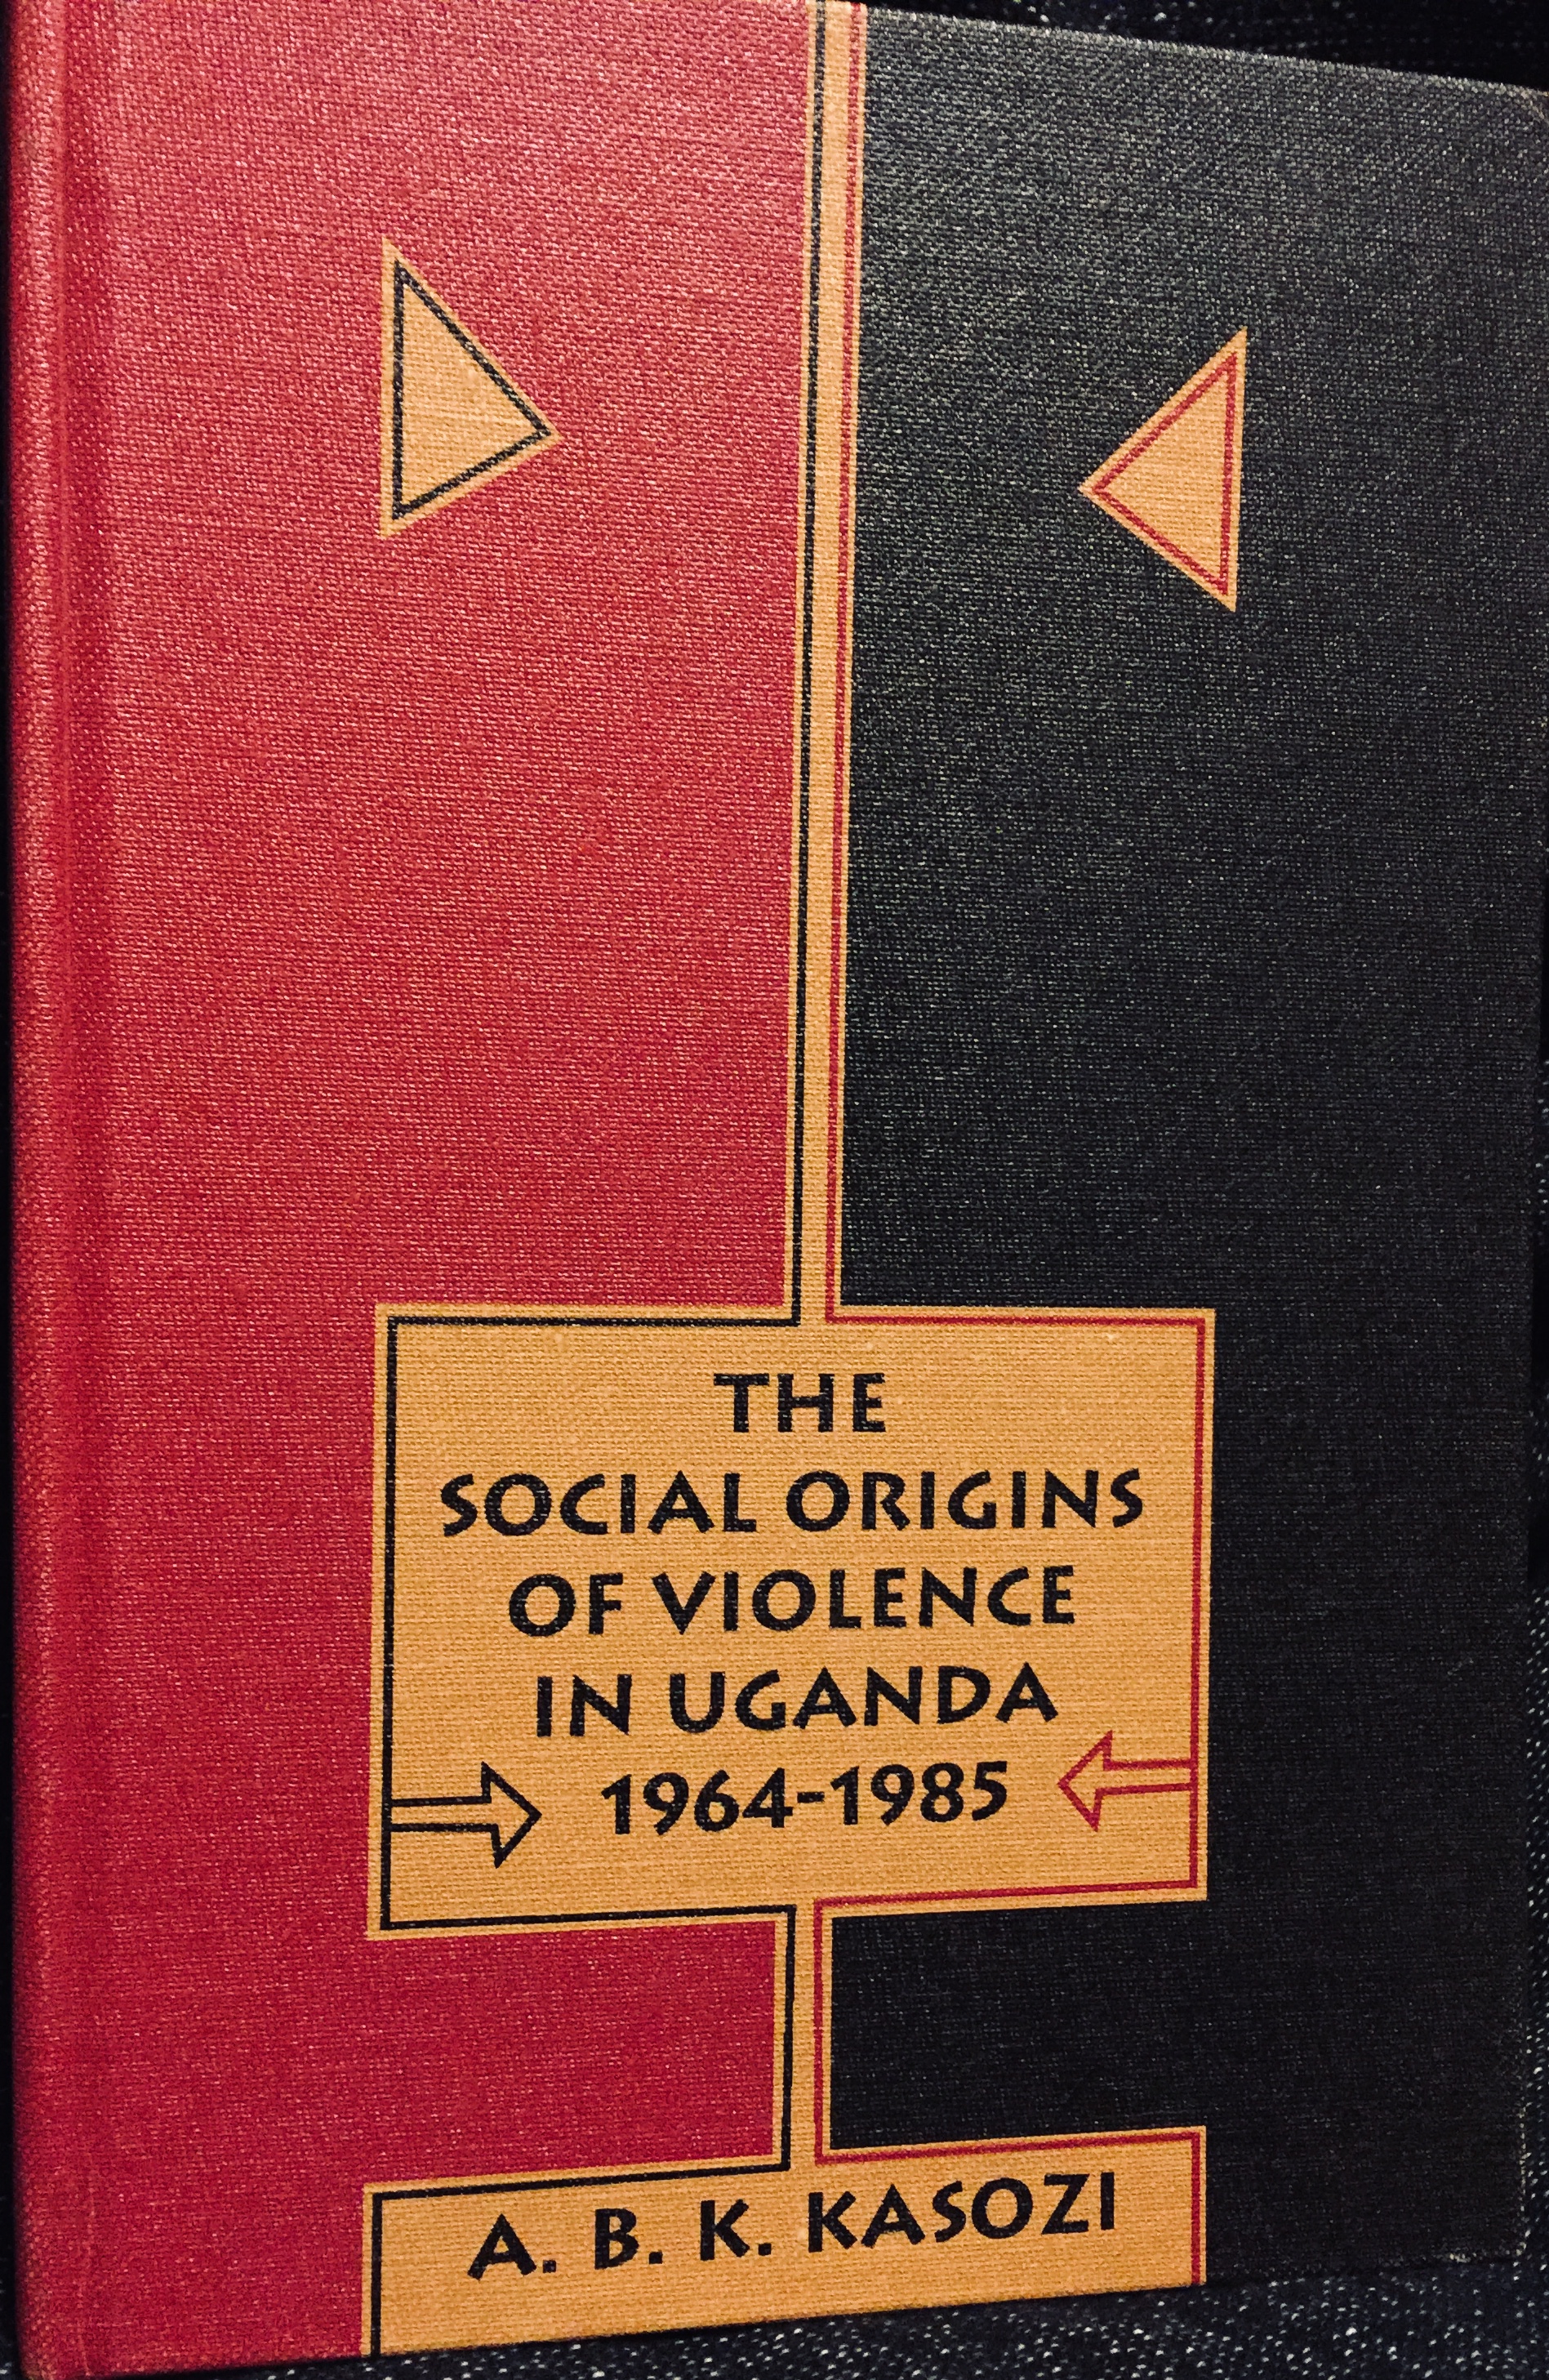 The Social Origins of Violence in Uganda, 1964-1985 – By A.B.K. Kasozi